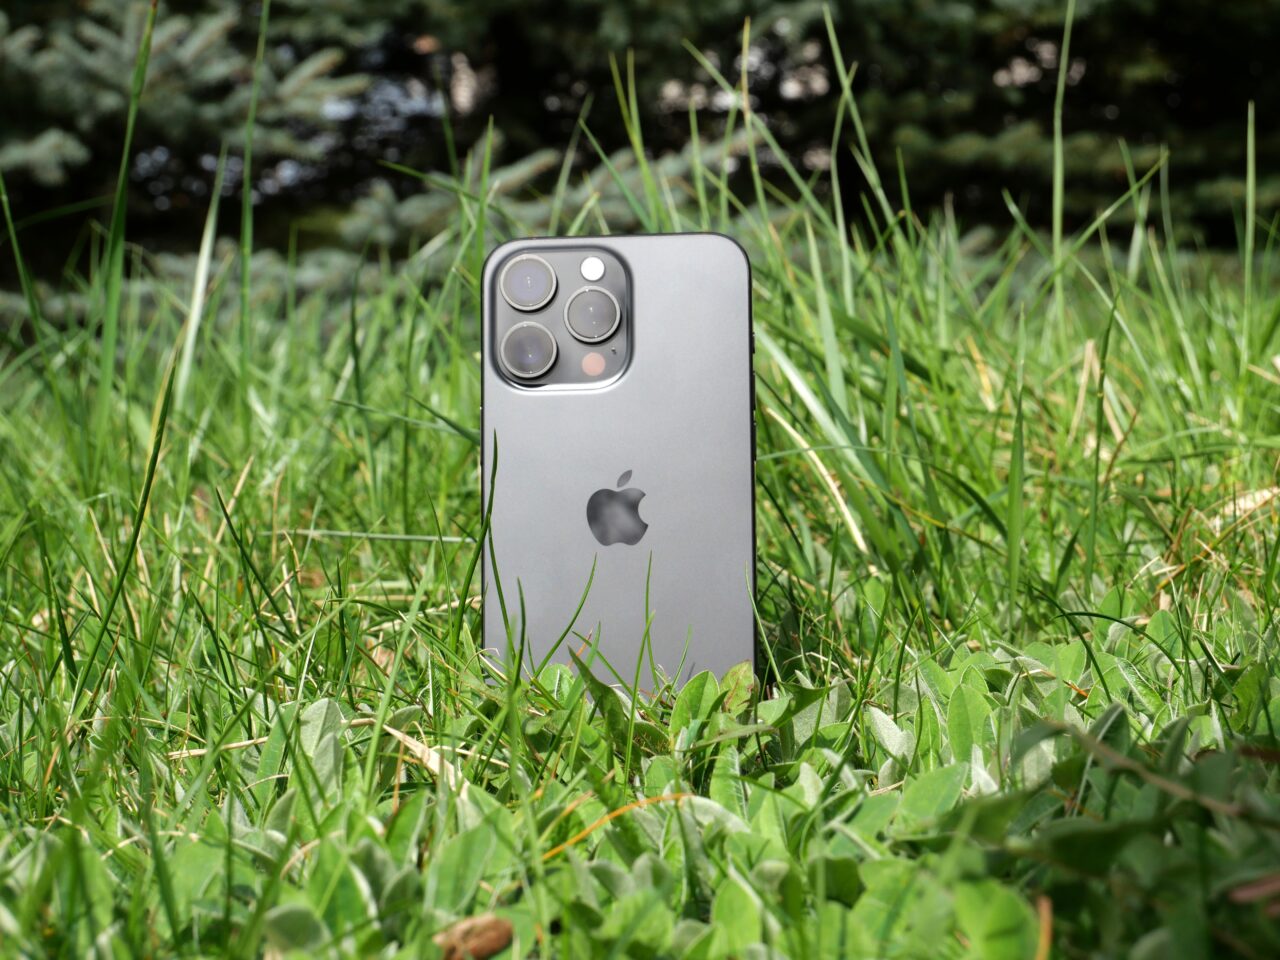 Smartfon z potrójnym aparatem fotograficznym stoi pionowo na trawiastym podłożu z roślinnością w tle.